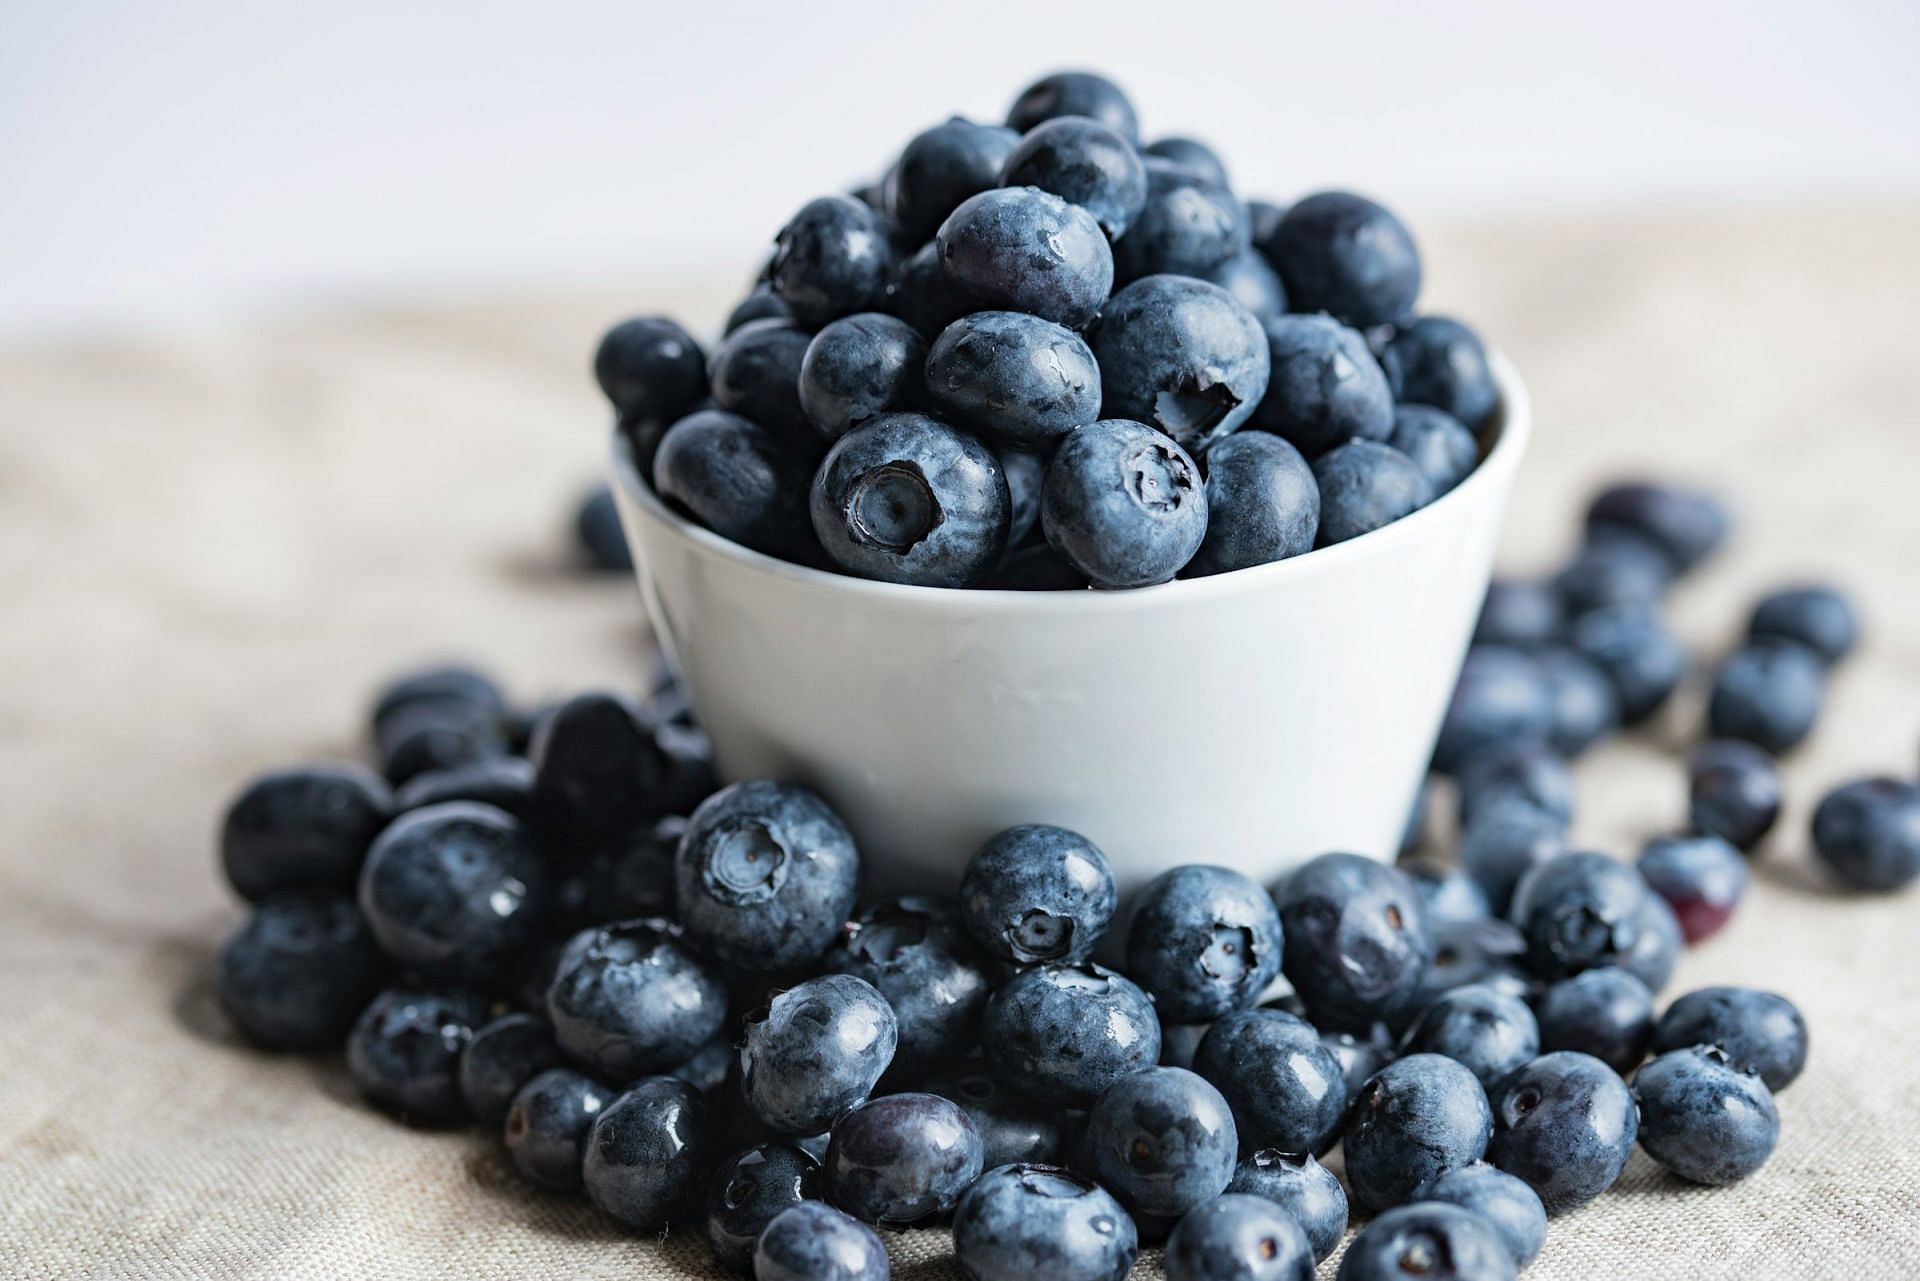 Blueberries (Image via Unsplash/Joanna)